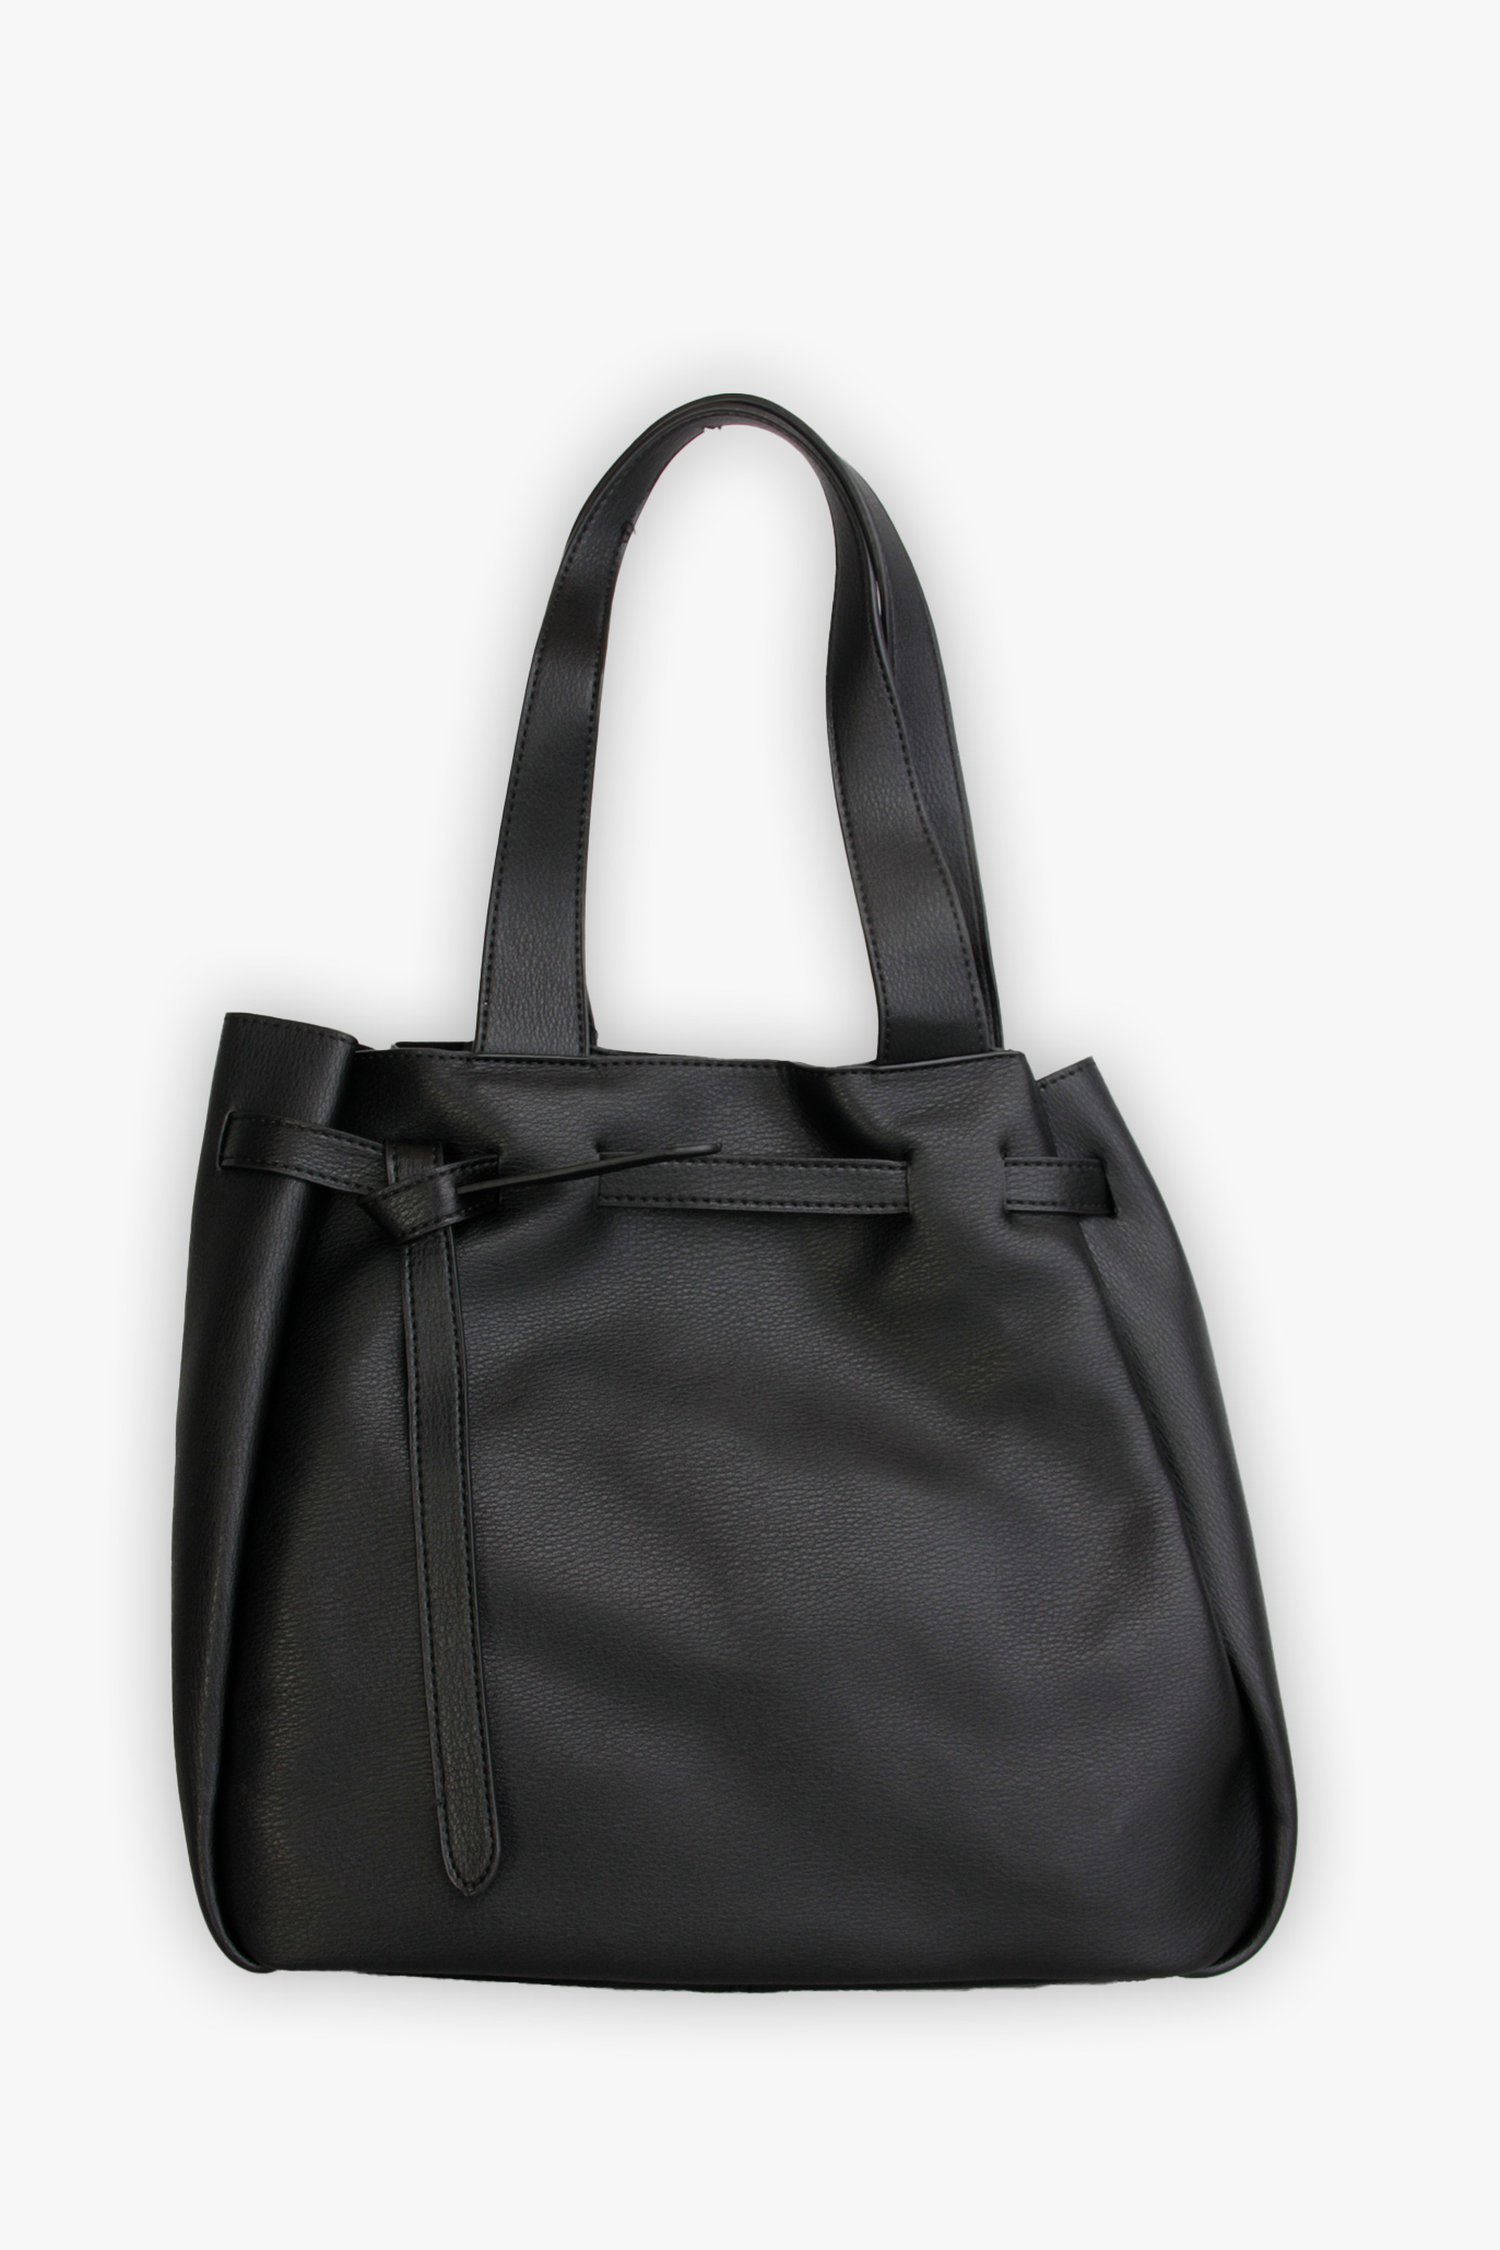 Middelgrote zwarte handtas van Modeno voor Dames